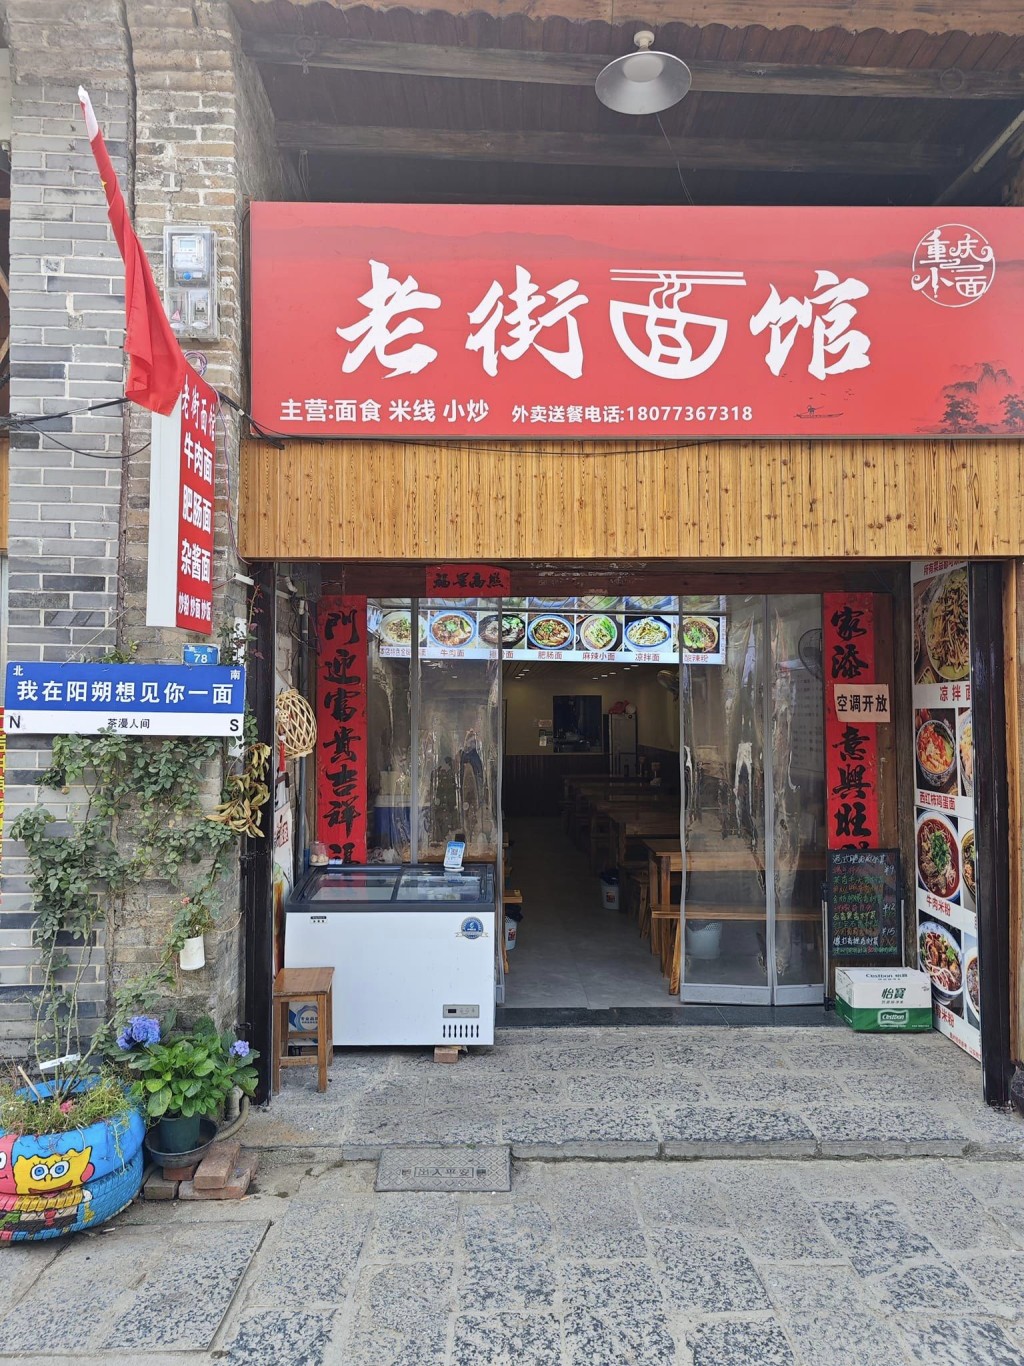 興坪古鎮內的麵店。圖片授權Byron Chan